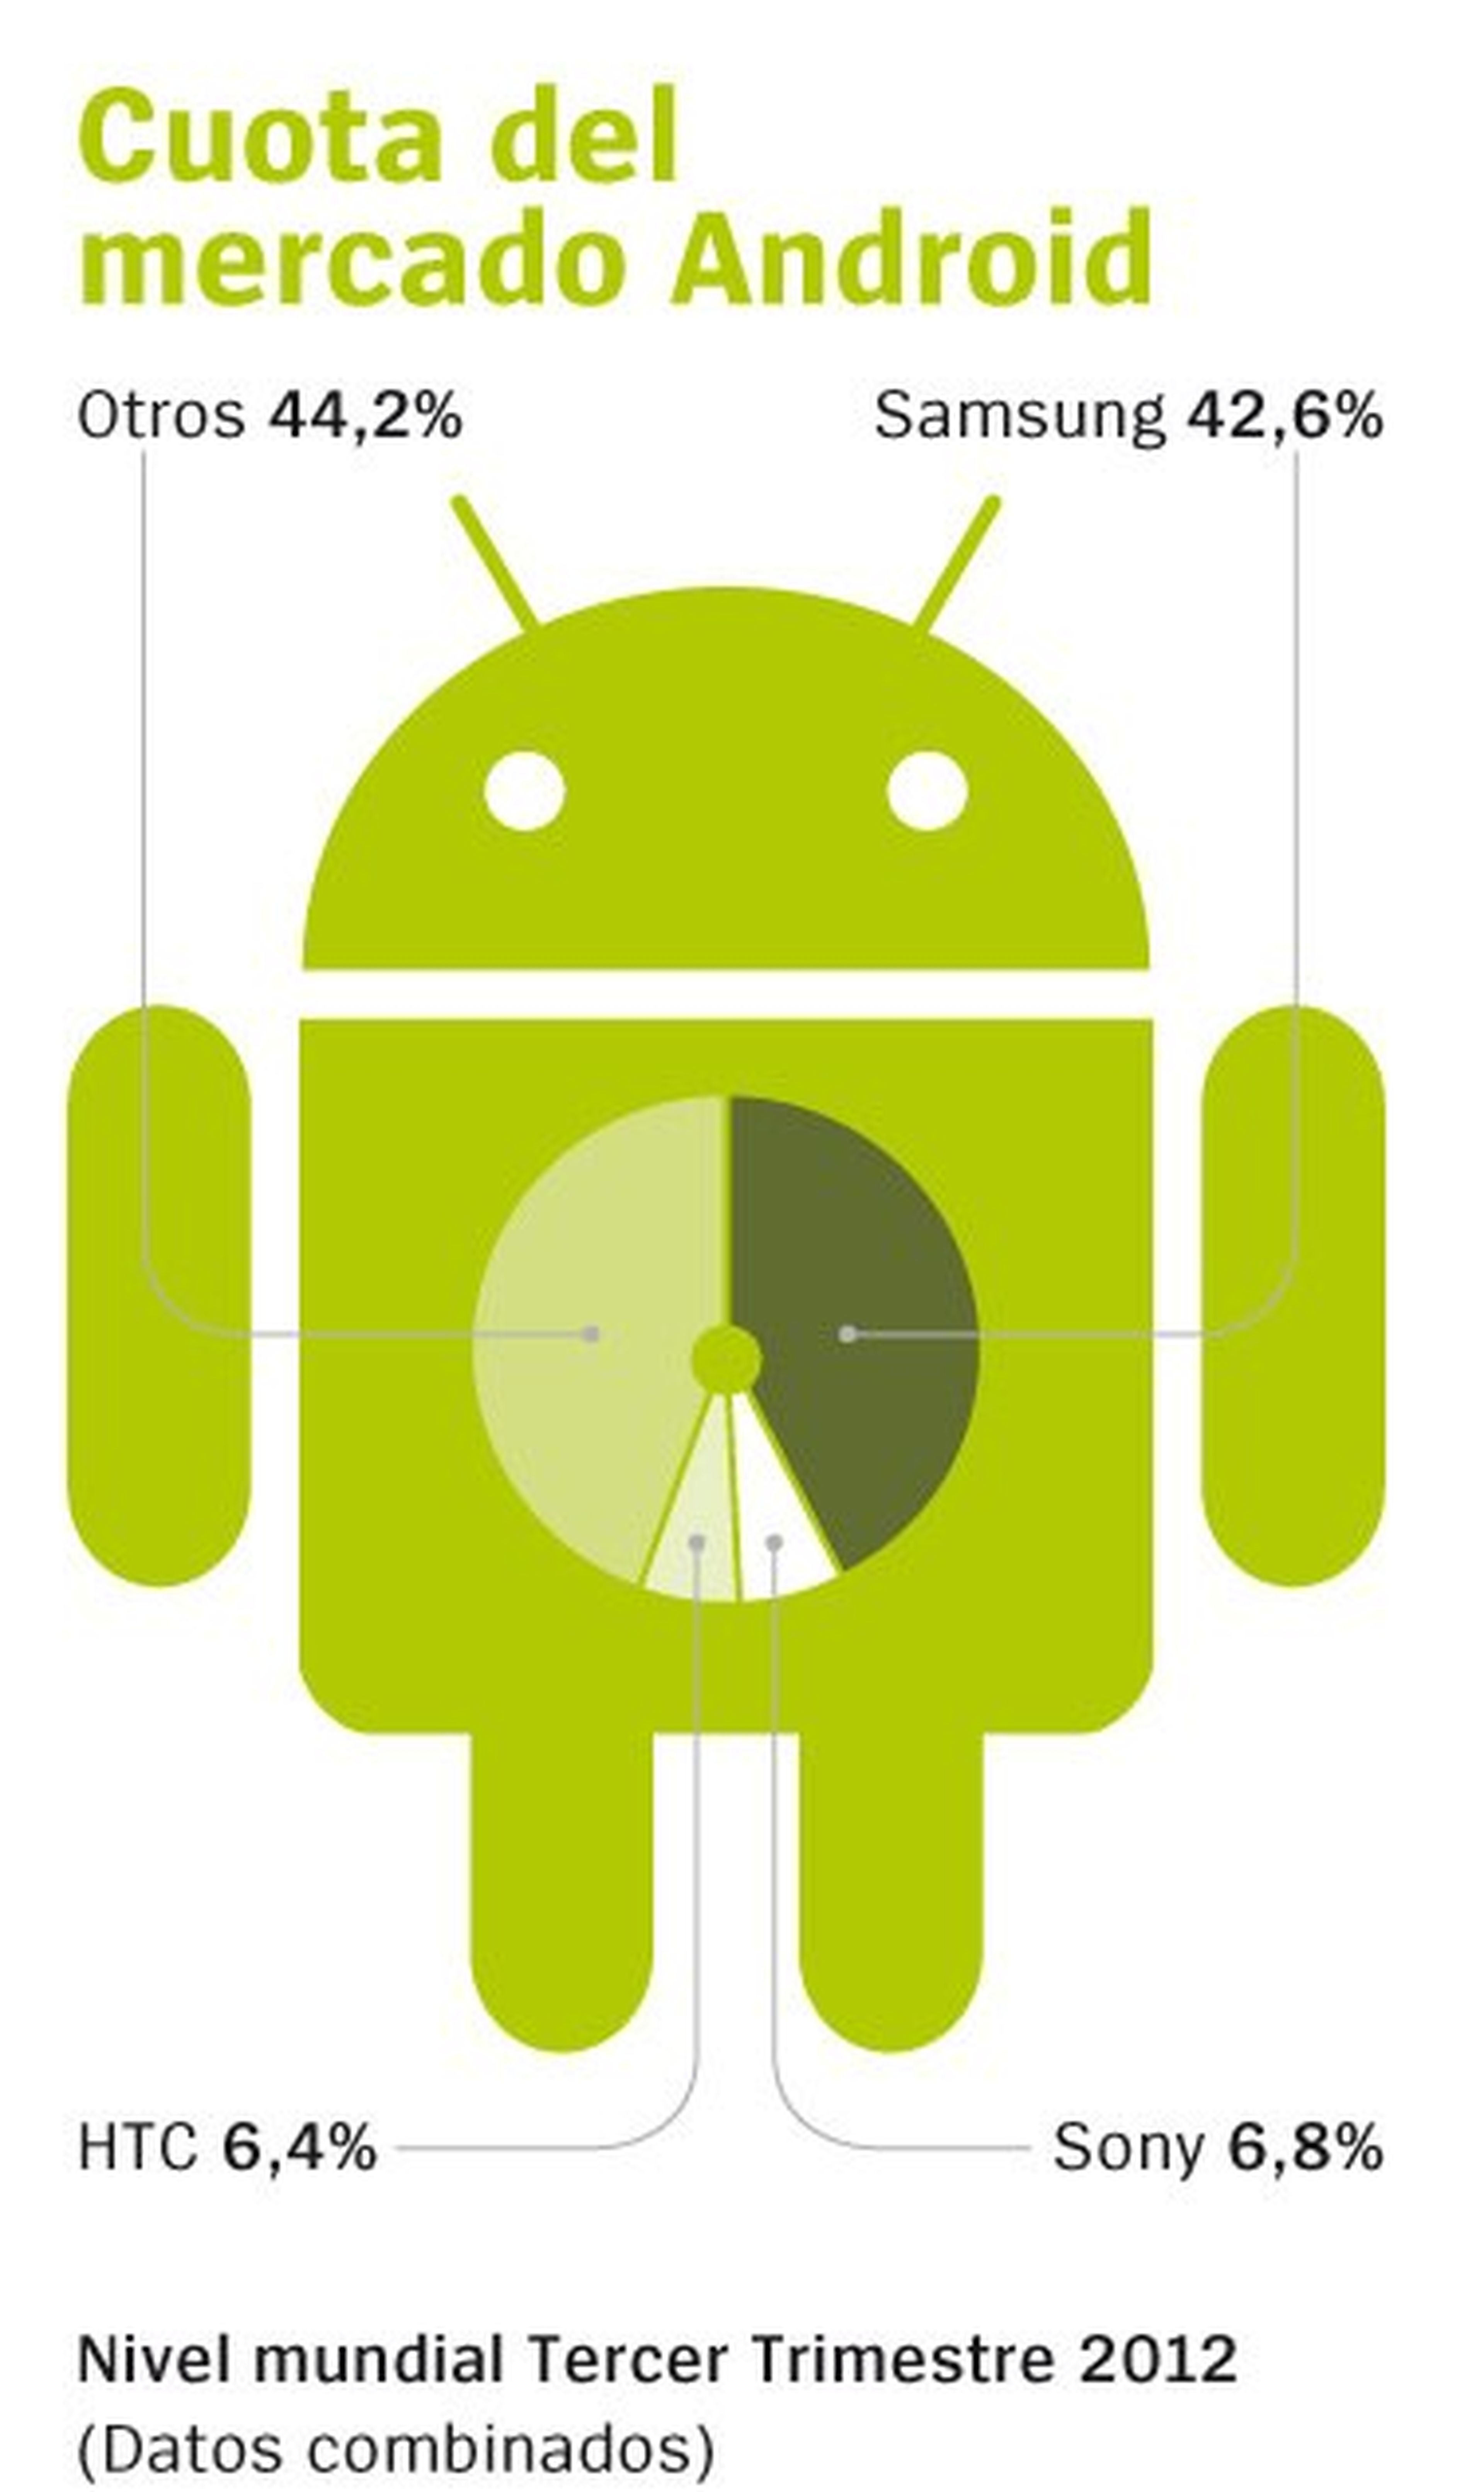 Cuota del mercado Android por fabricantes